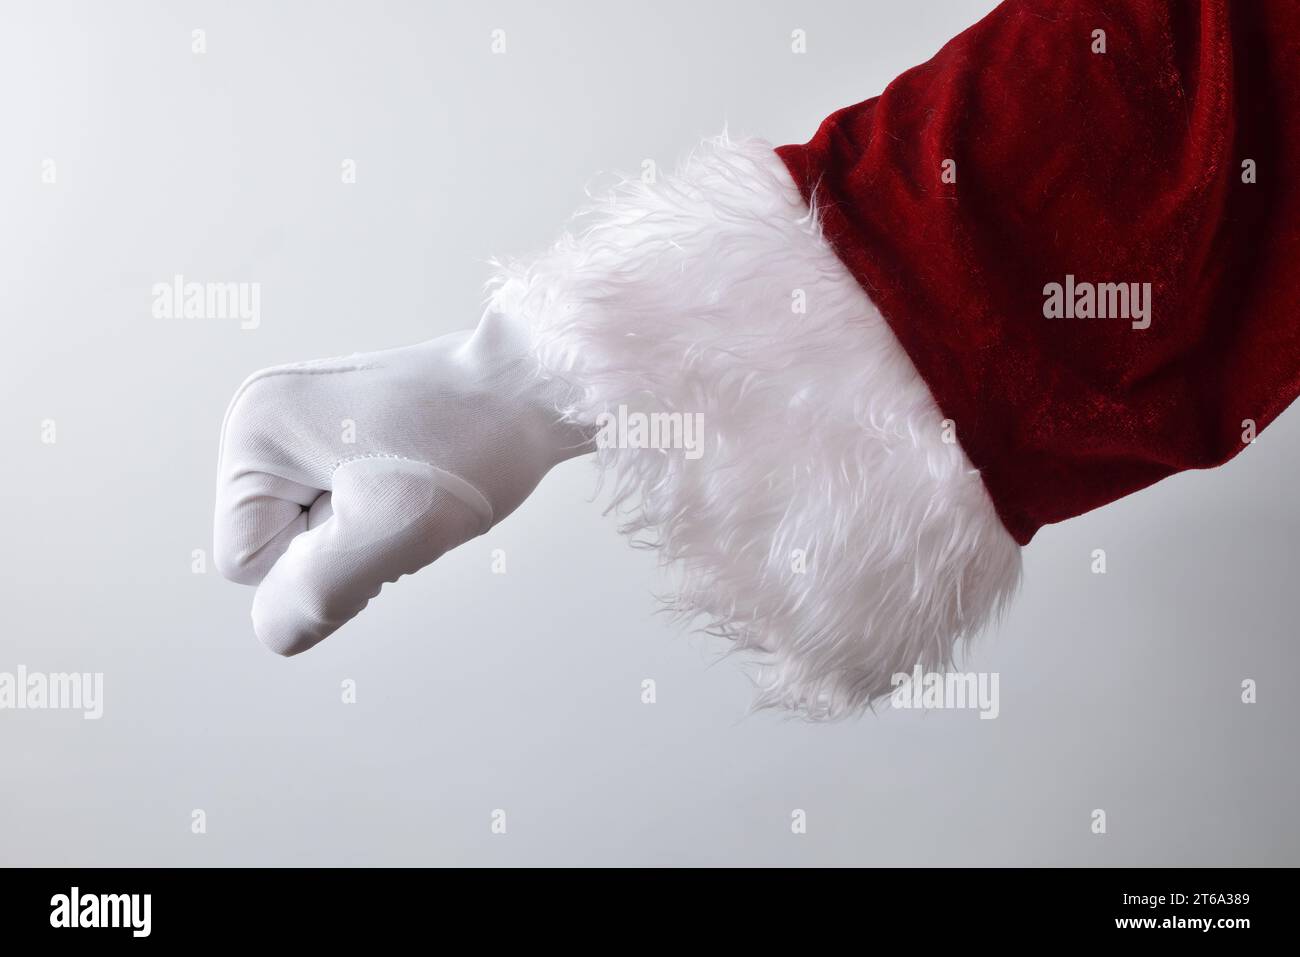 Dettaglio della mano di babbo natale con pugno stringato capovolto nel concetto di impatto con guanti bianchi tradizionalmente vestiti di rosso isolati con sfumatura bac Foto Stock